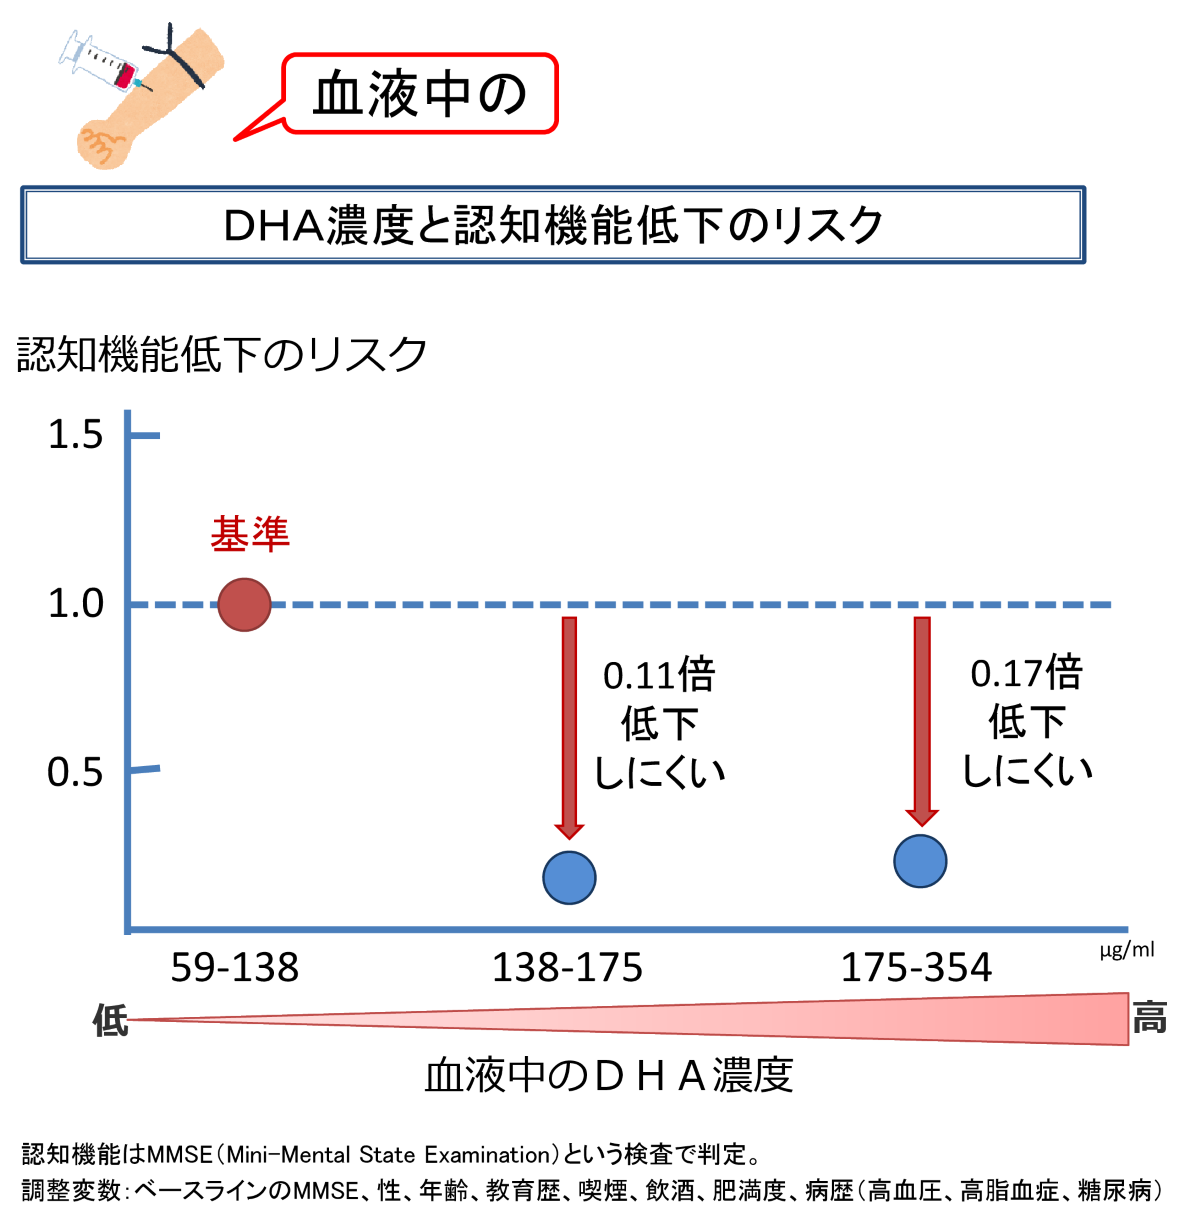 血液中のDHA濃度と認知機能低下のリスクの関連を示した図。血液中のDHA濃度59から138を基準とし、濃度138から175では0.11倍、濃度175から354では0.17倍、それぞれ認知機能低下しにくい。